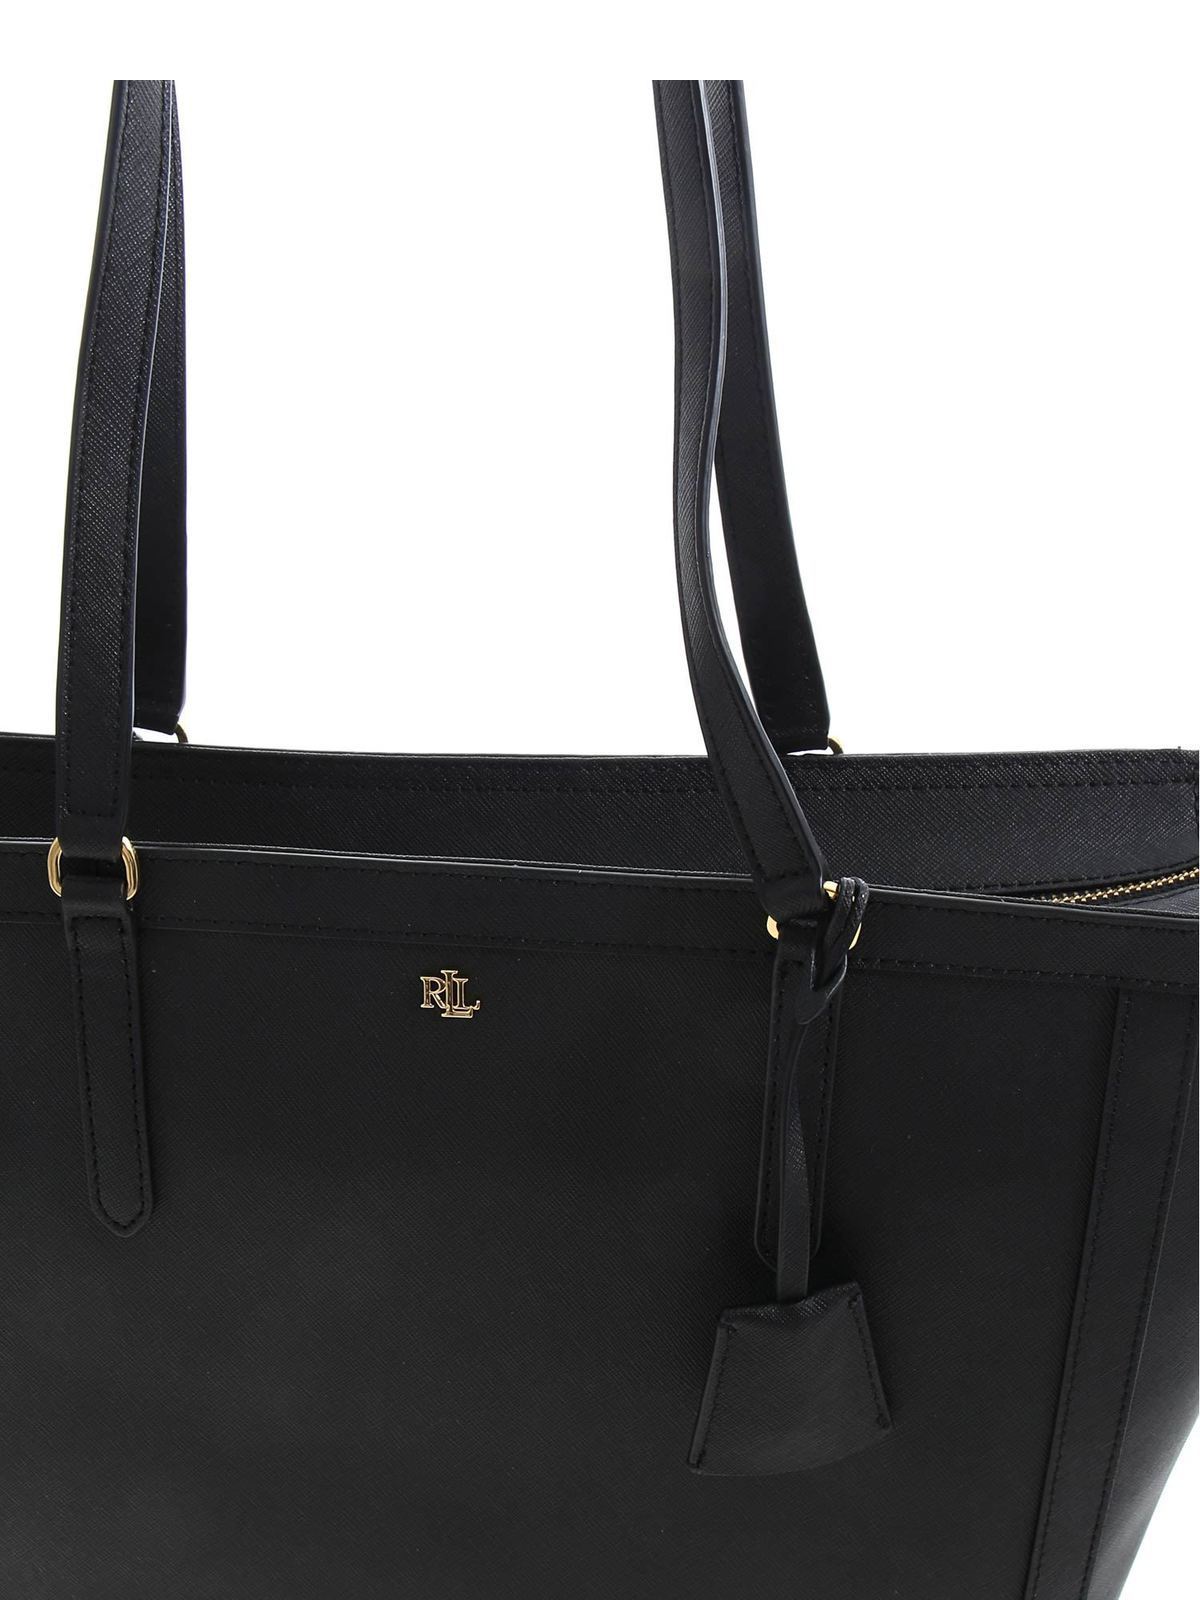 Totes bags Lauren Ralph Lauren - Saffiano shoulder bag in black -  431842430001